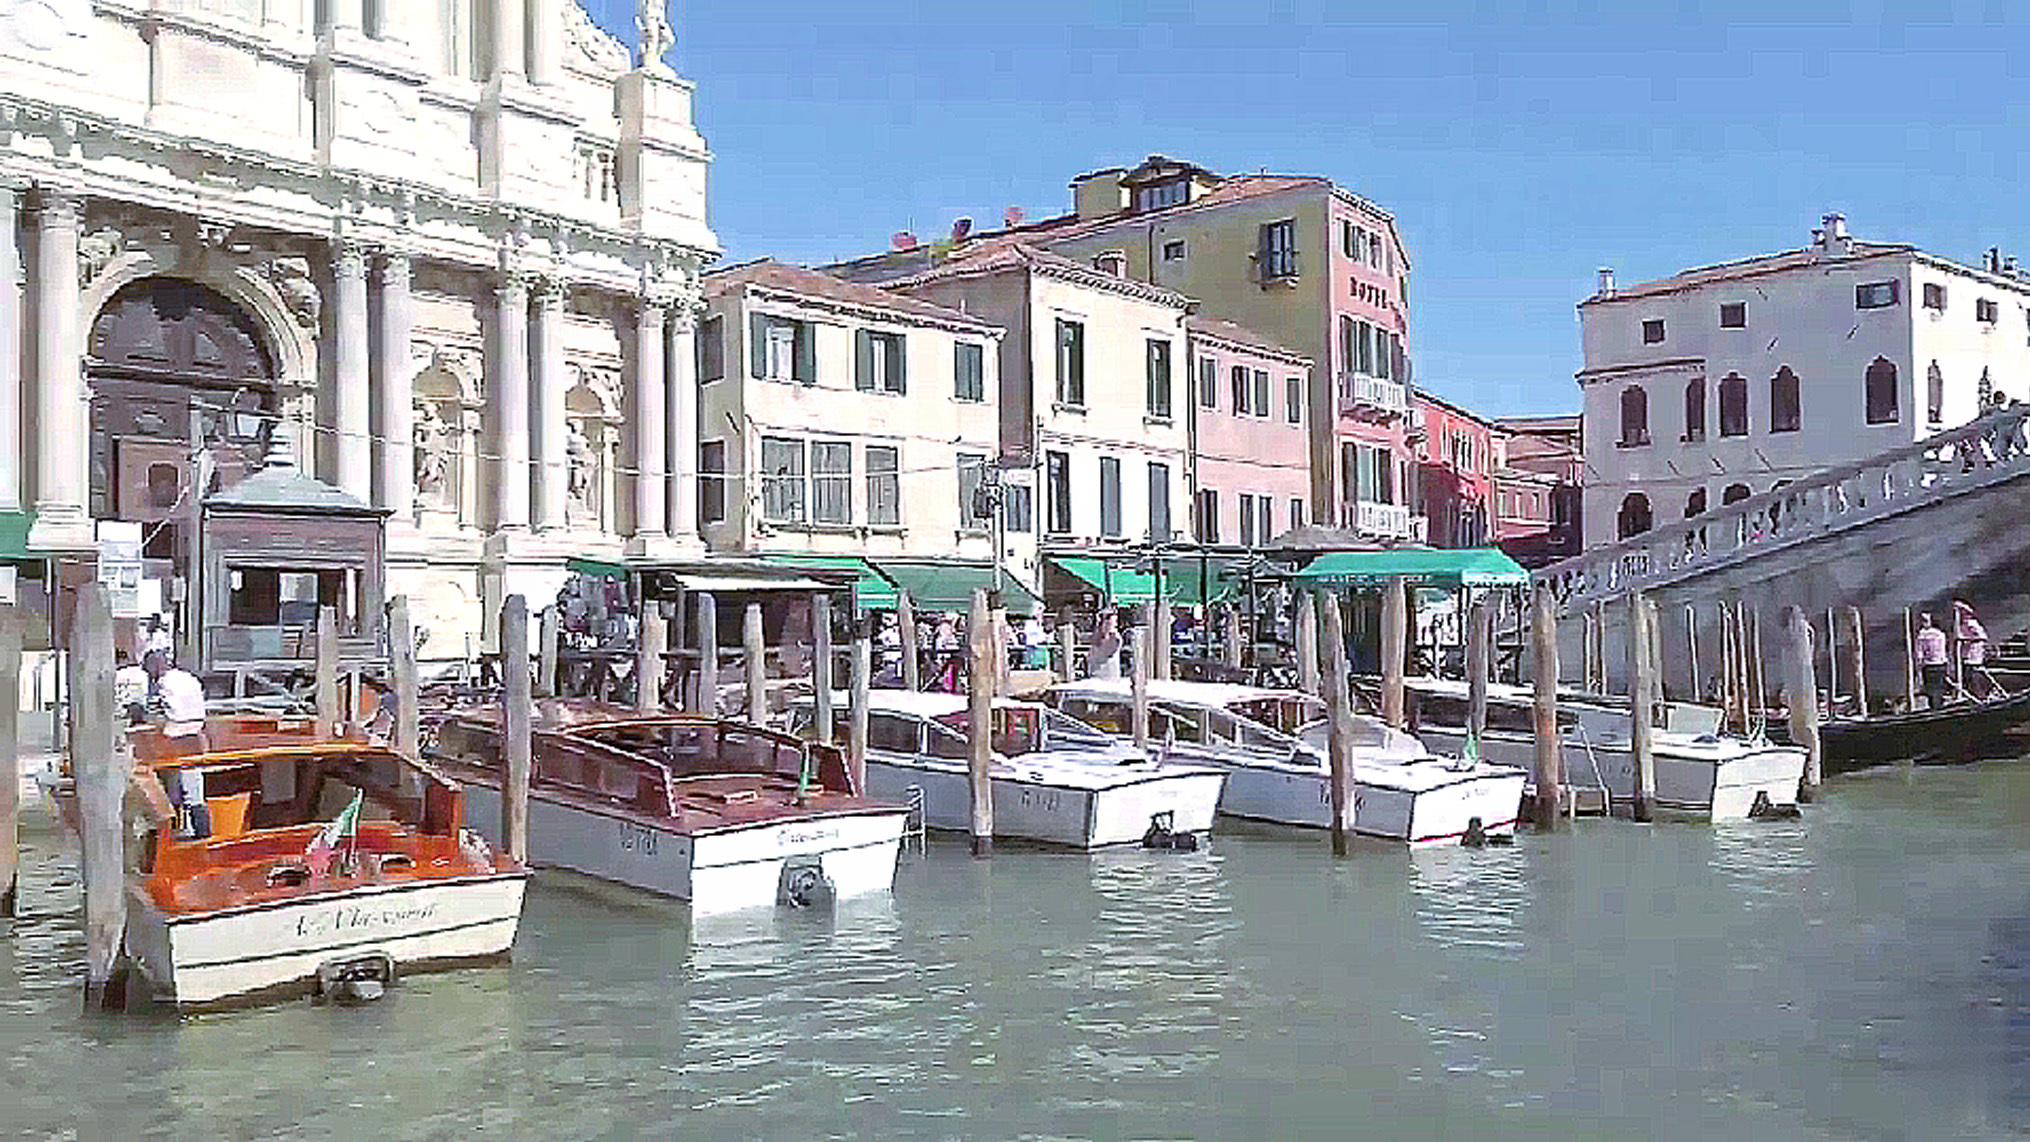 意大利 - 威尼斯 - 水上巴士观光游览